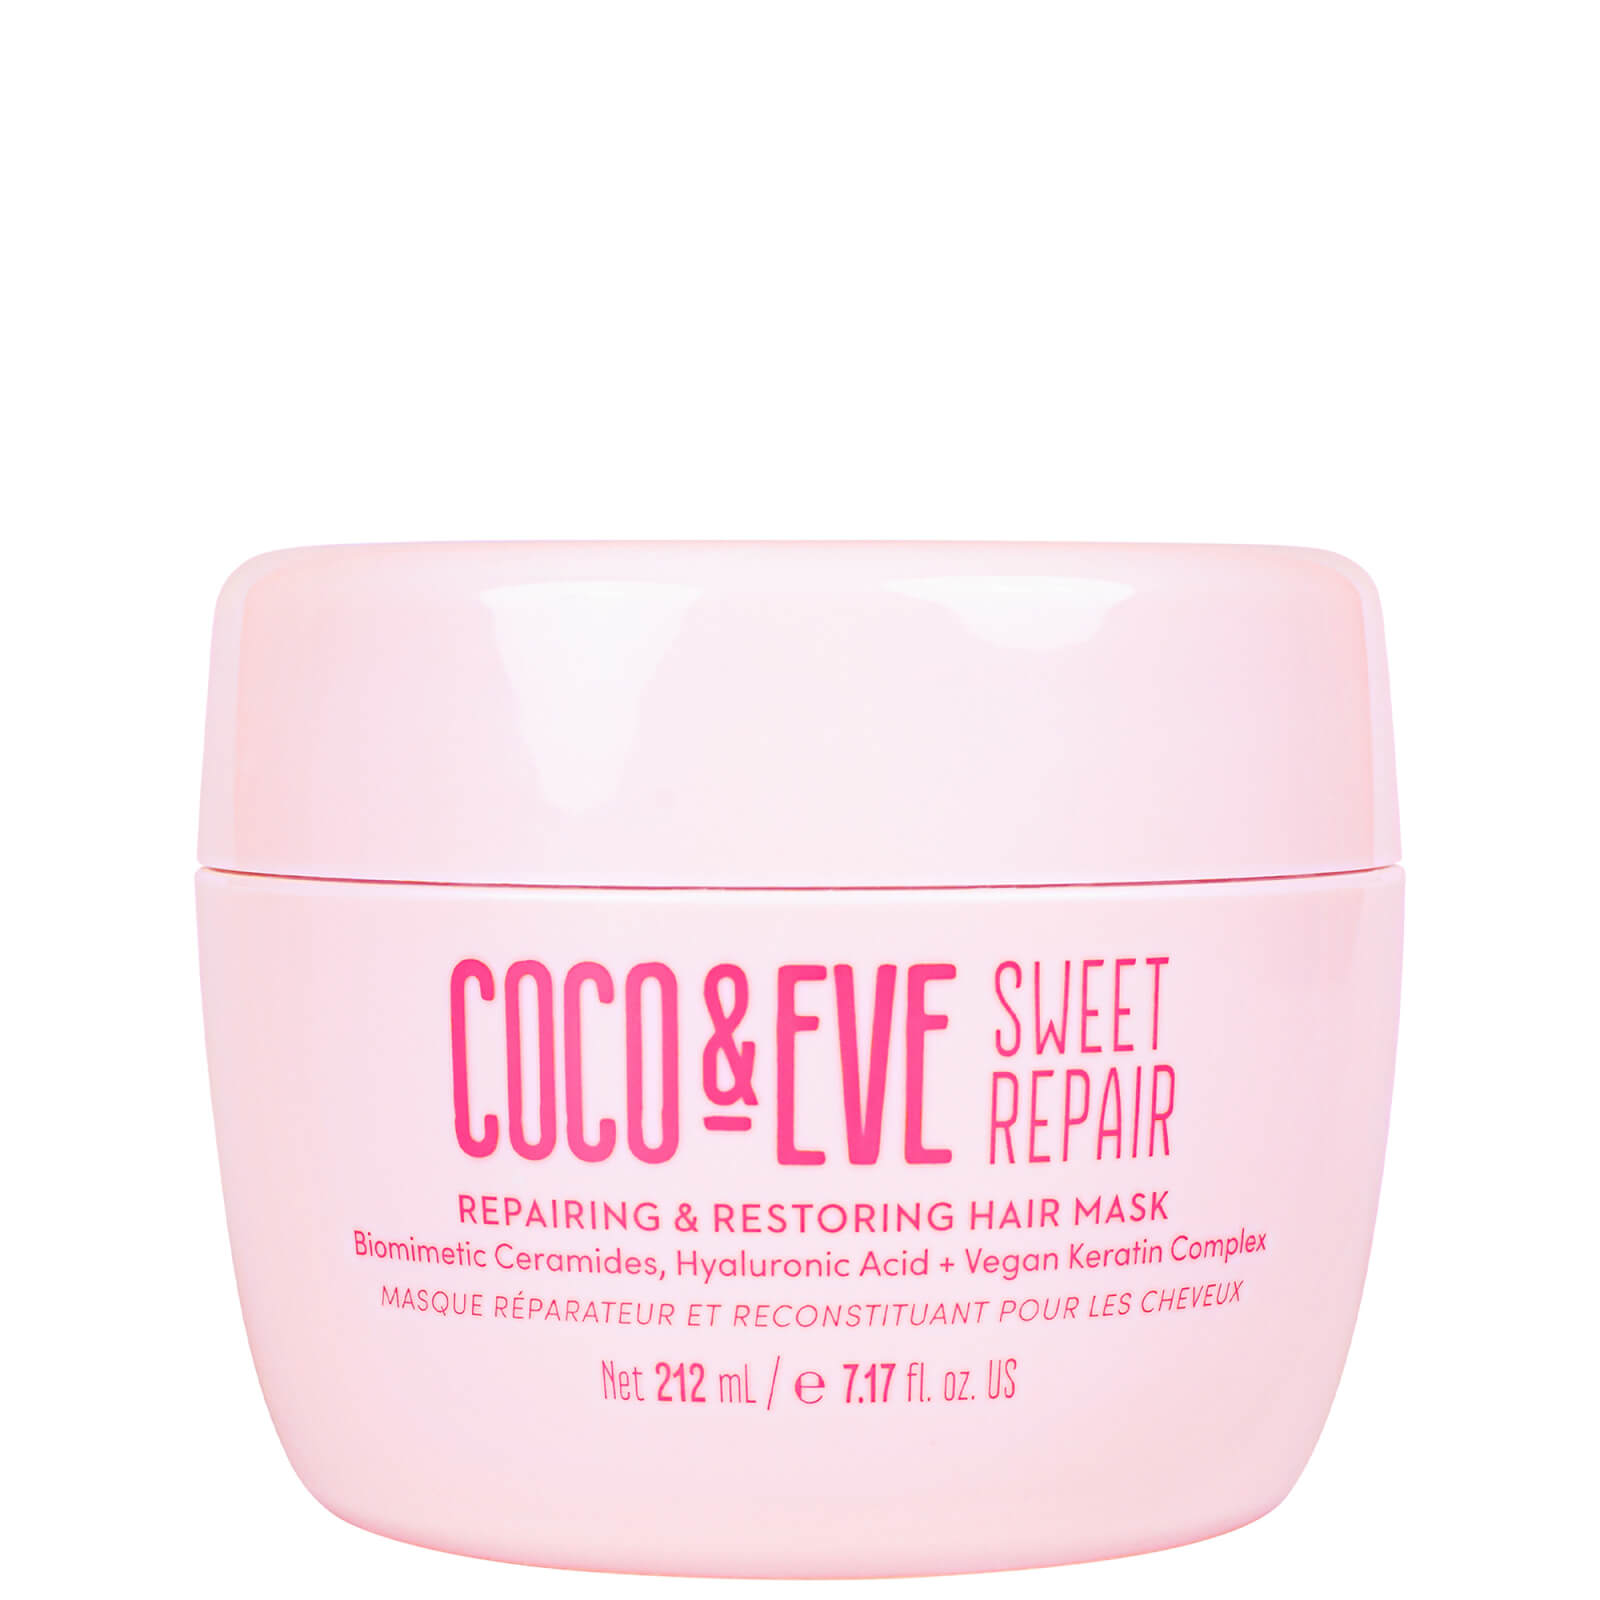 Image of Coco & Eve Sweet Repair Repairing and Restoring Hair Mask 212ml